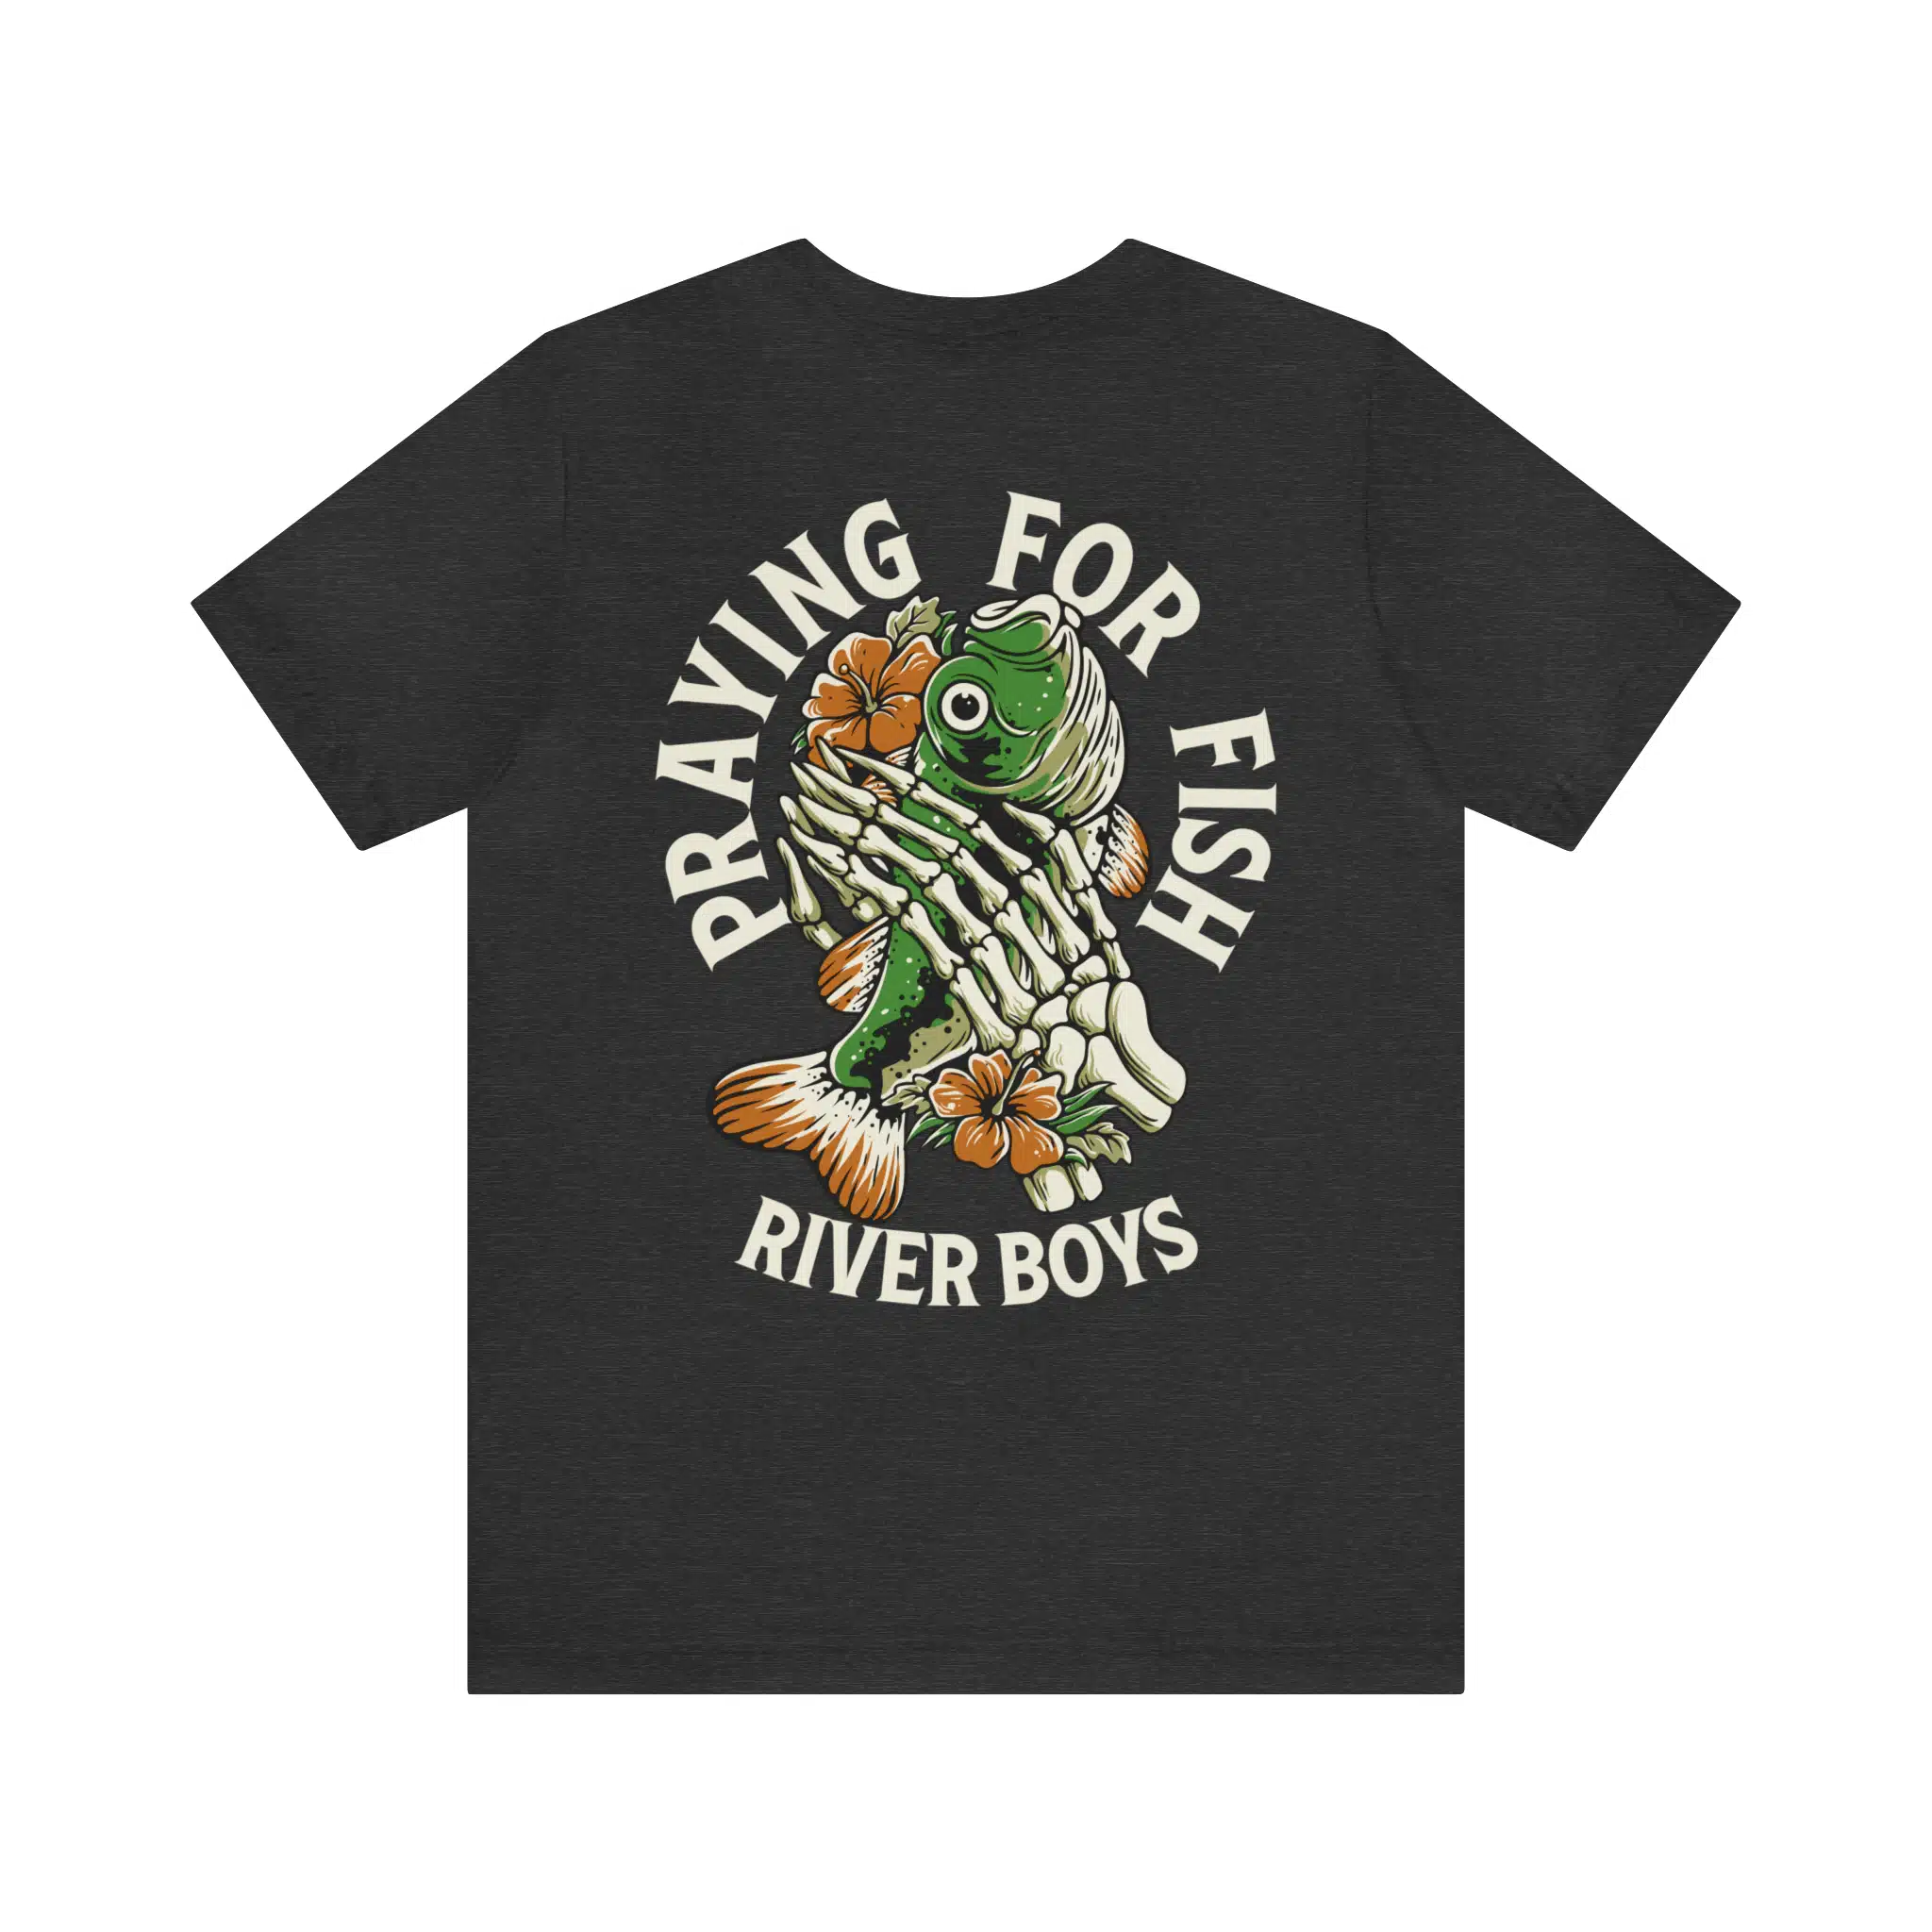 Pray for Fish – Fishing Tee » River Boys Adventure Club